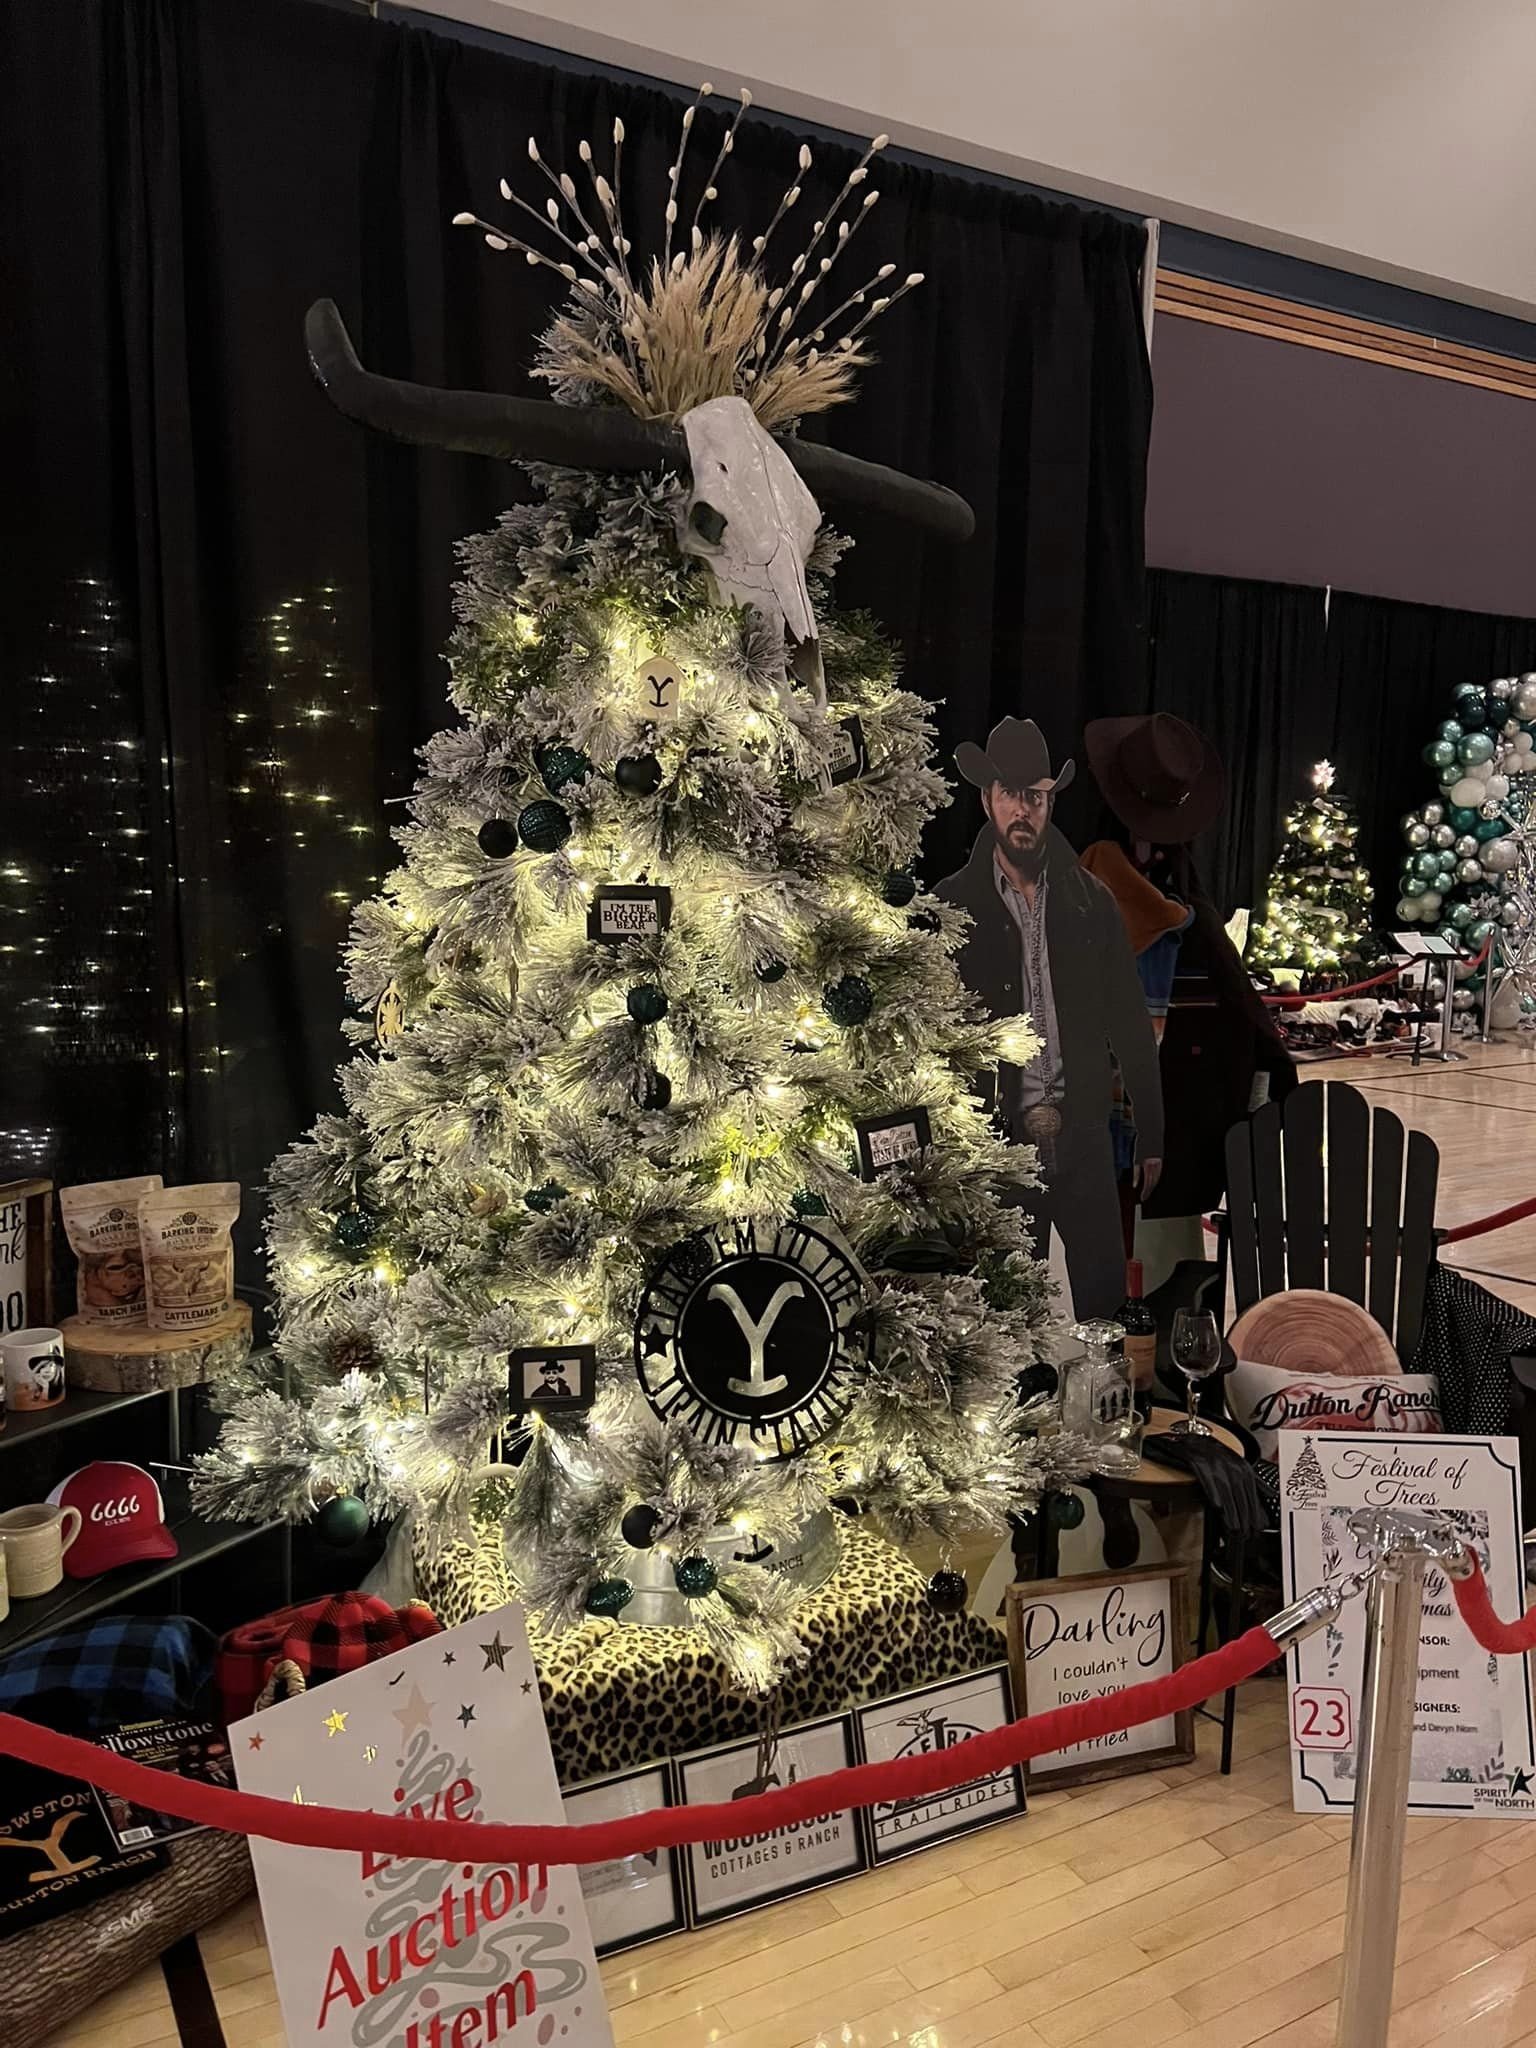 Gucci Christmas Tree